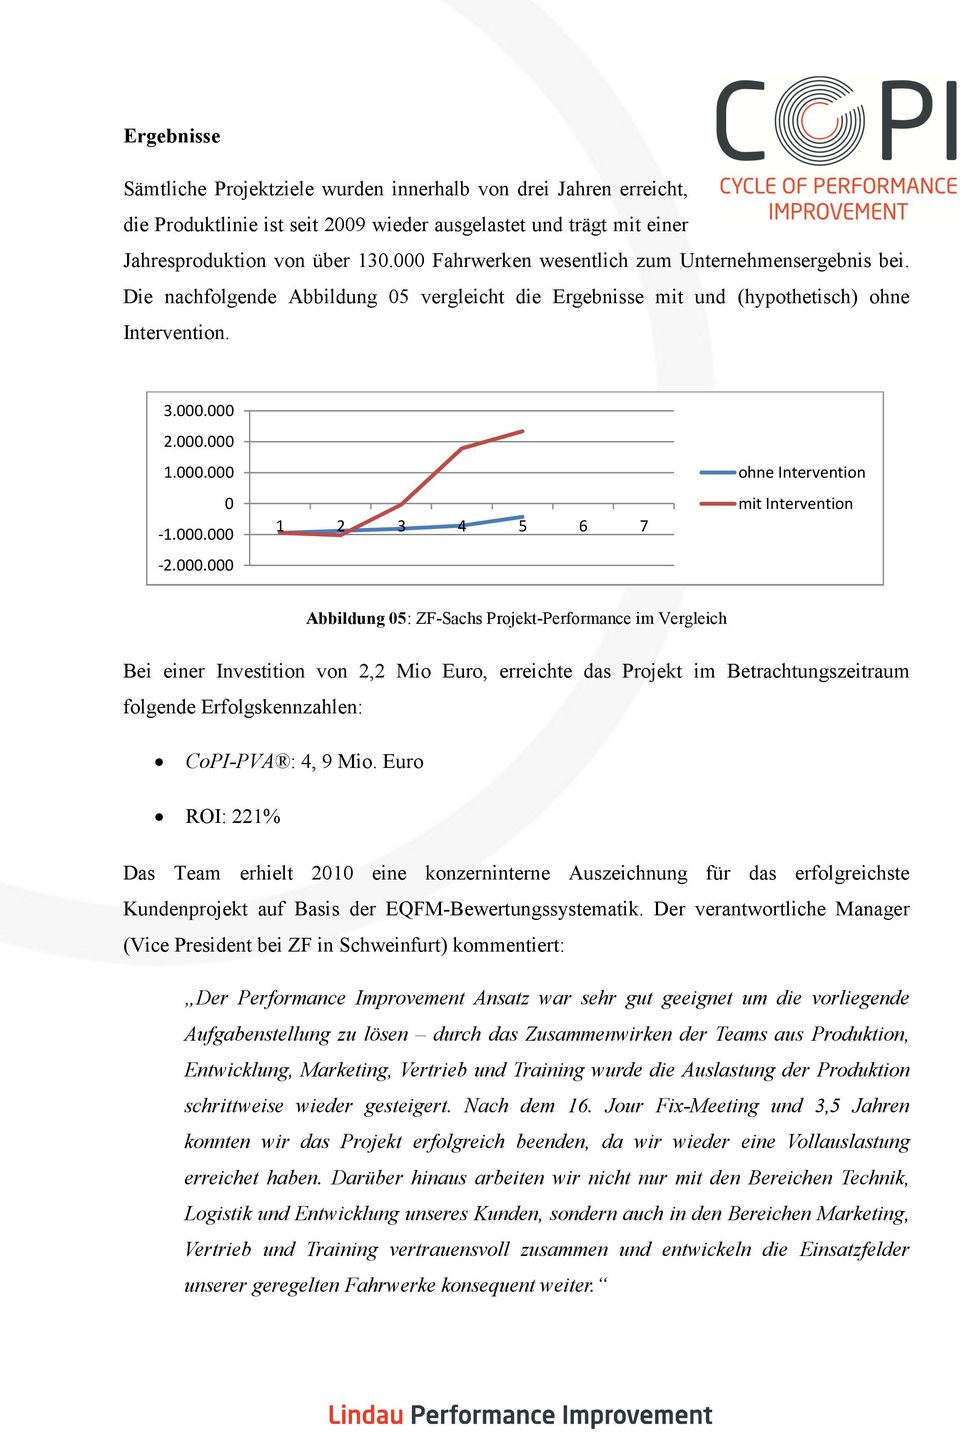 000.000 1 2 3 4 5 6 7 ohne Intervention mit Intervention Abbildung 05: ZF-Sachs Projekt-Performance im Vergleich Bei einer Investition von 2,2 Mio Euro, erreichte das Projekt im Betrachtungszeitraum